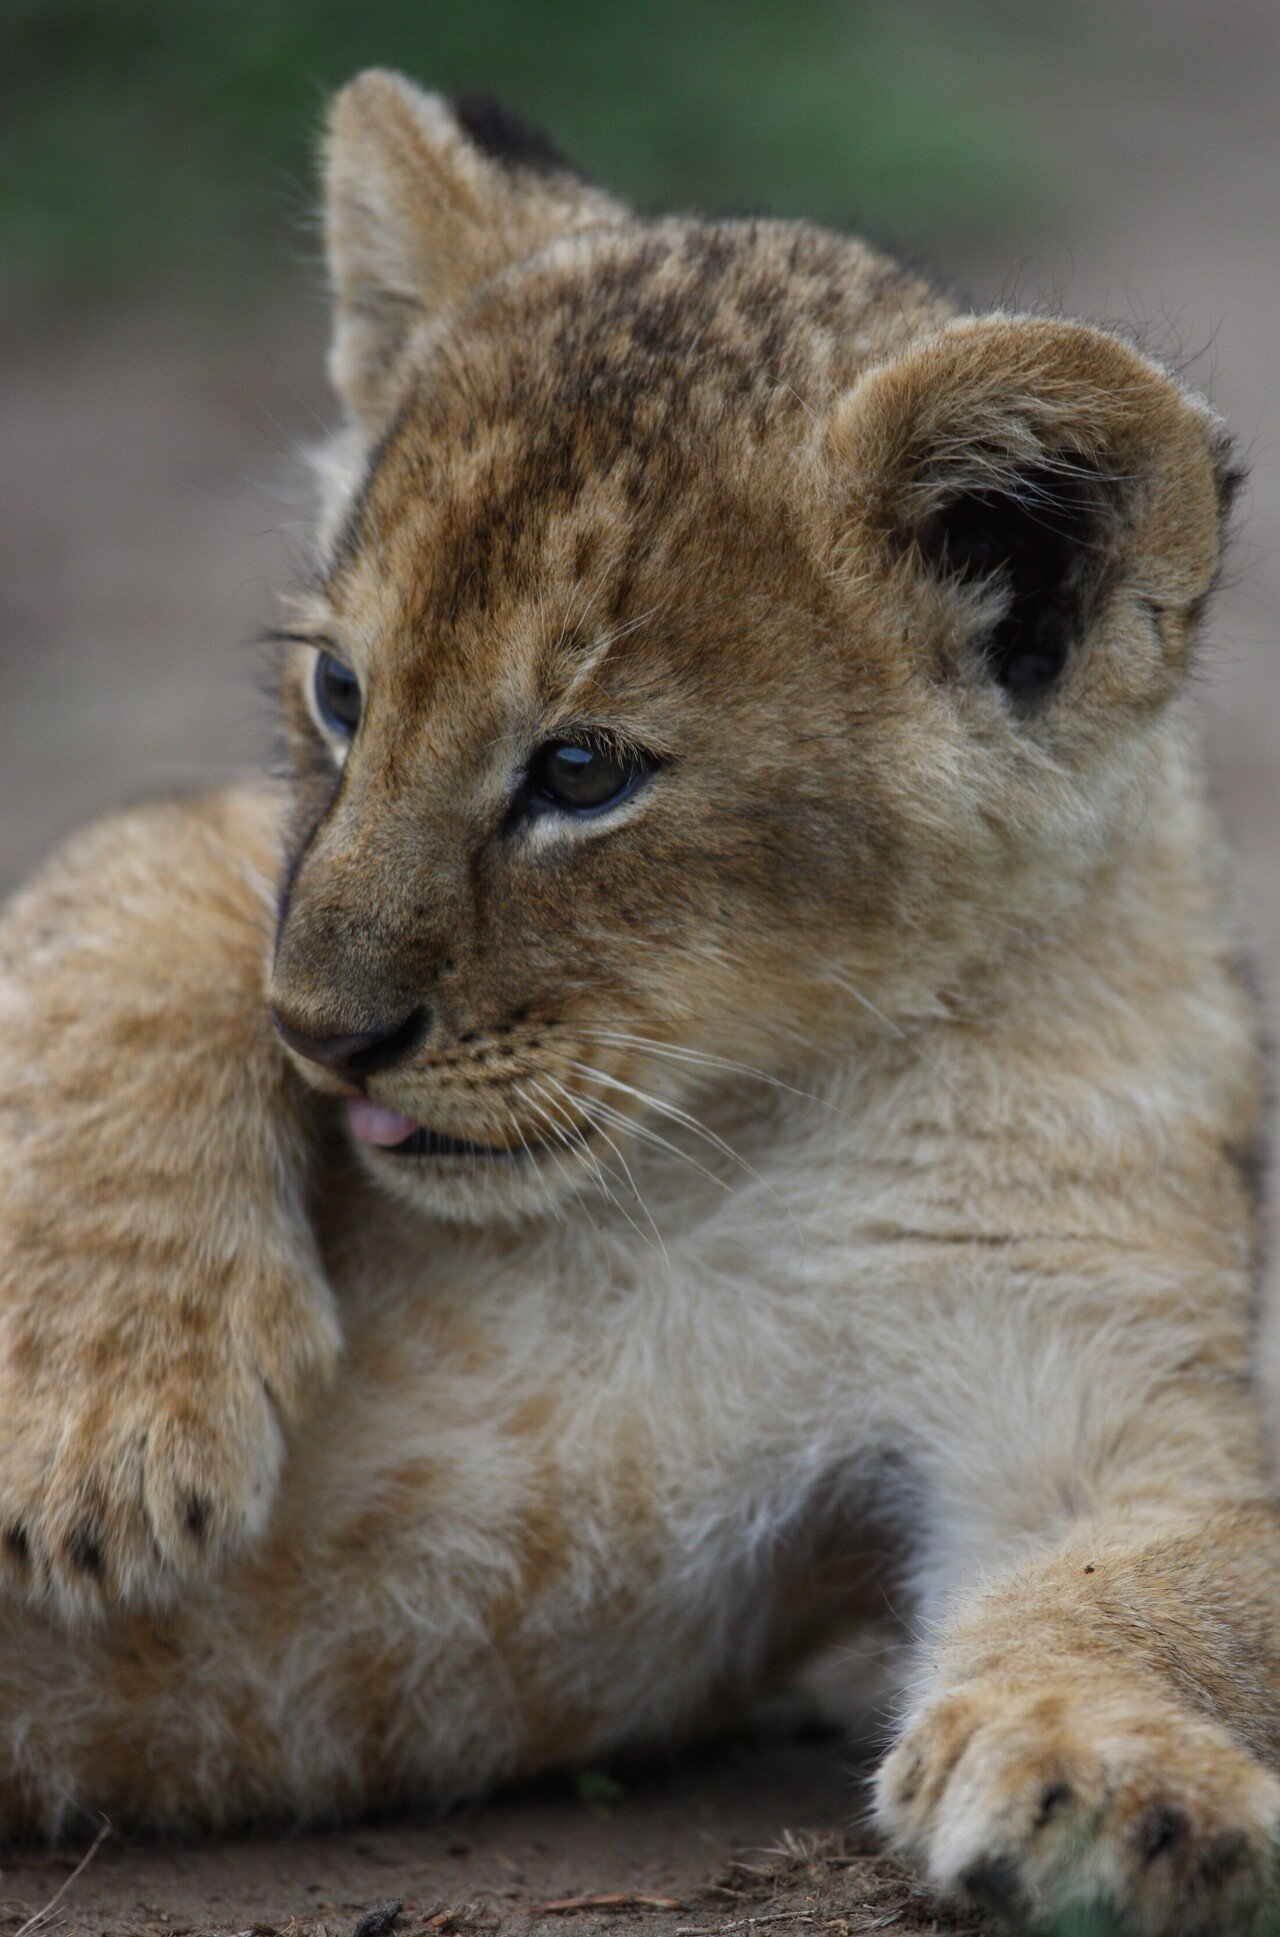 すくすく育つ子ライオン 写真集 サバンナのネコ ミニギャラリー３ Hb ホーム社文芸図書webサイト